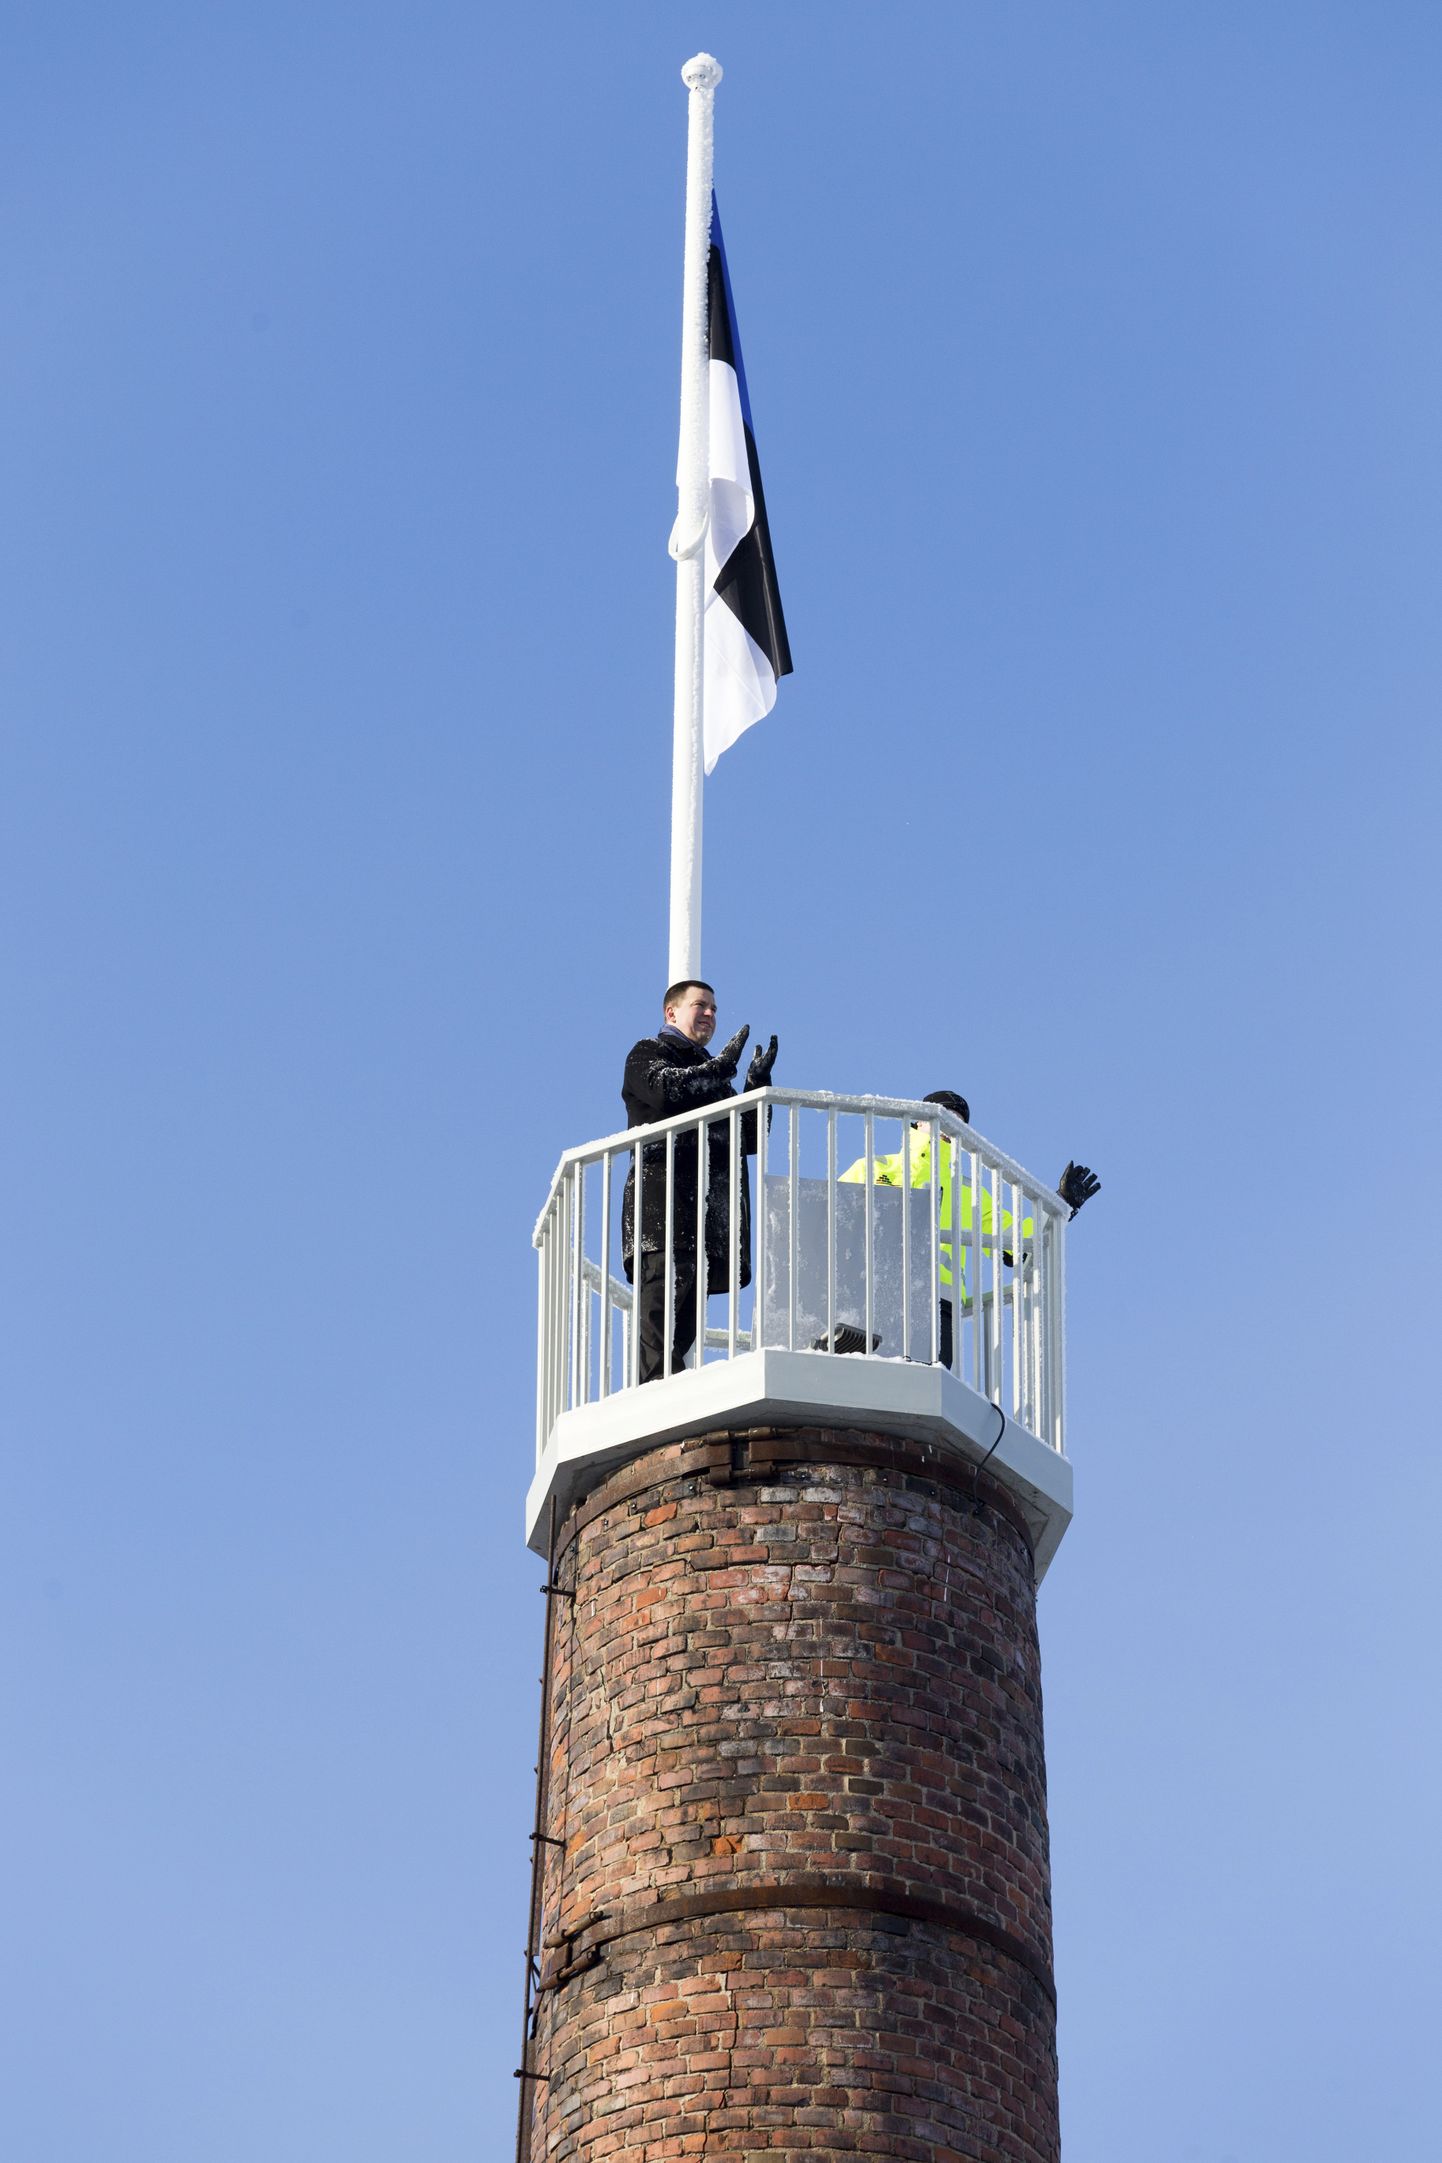 Varem võis linnanimega uhkeldada ka Mustla. See ülesvõte pärineb veebruarist, mil Mustlas Eesti lipp heisati Mulgi Majakal, mis on liputorniks kohandatud vanast meiereikorstnast.